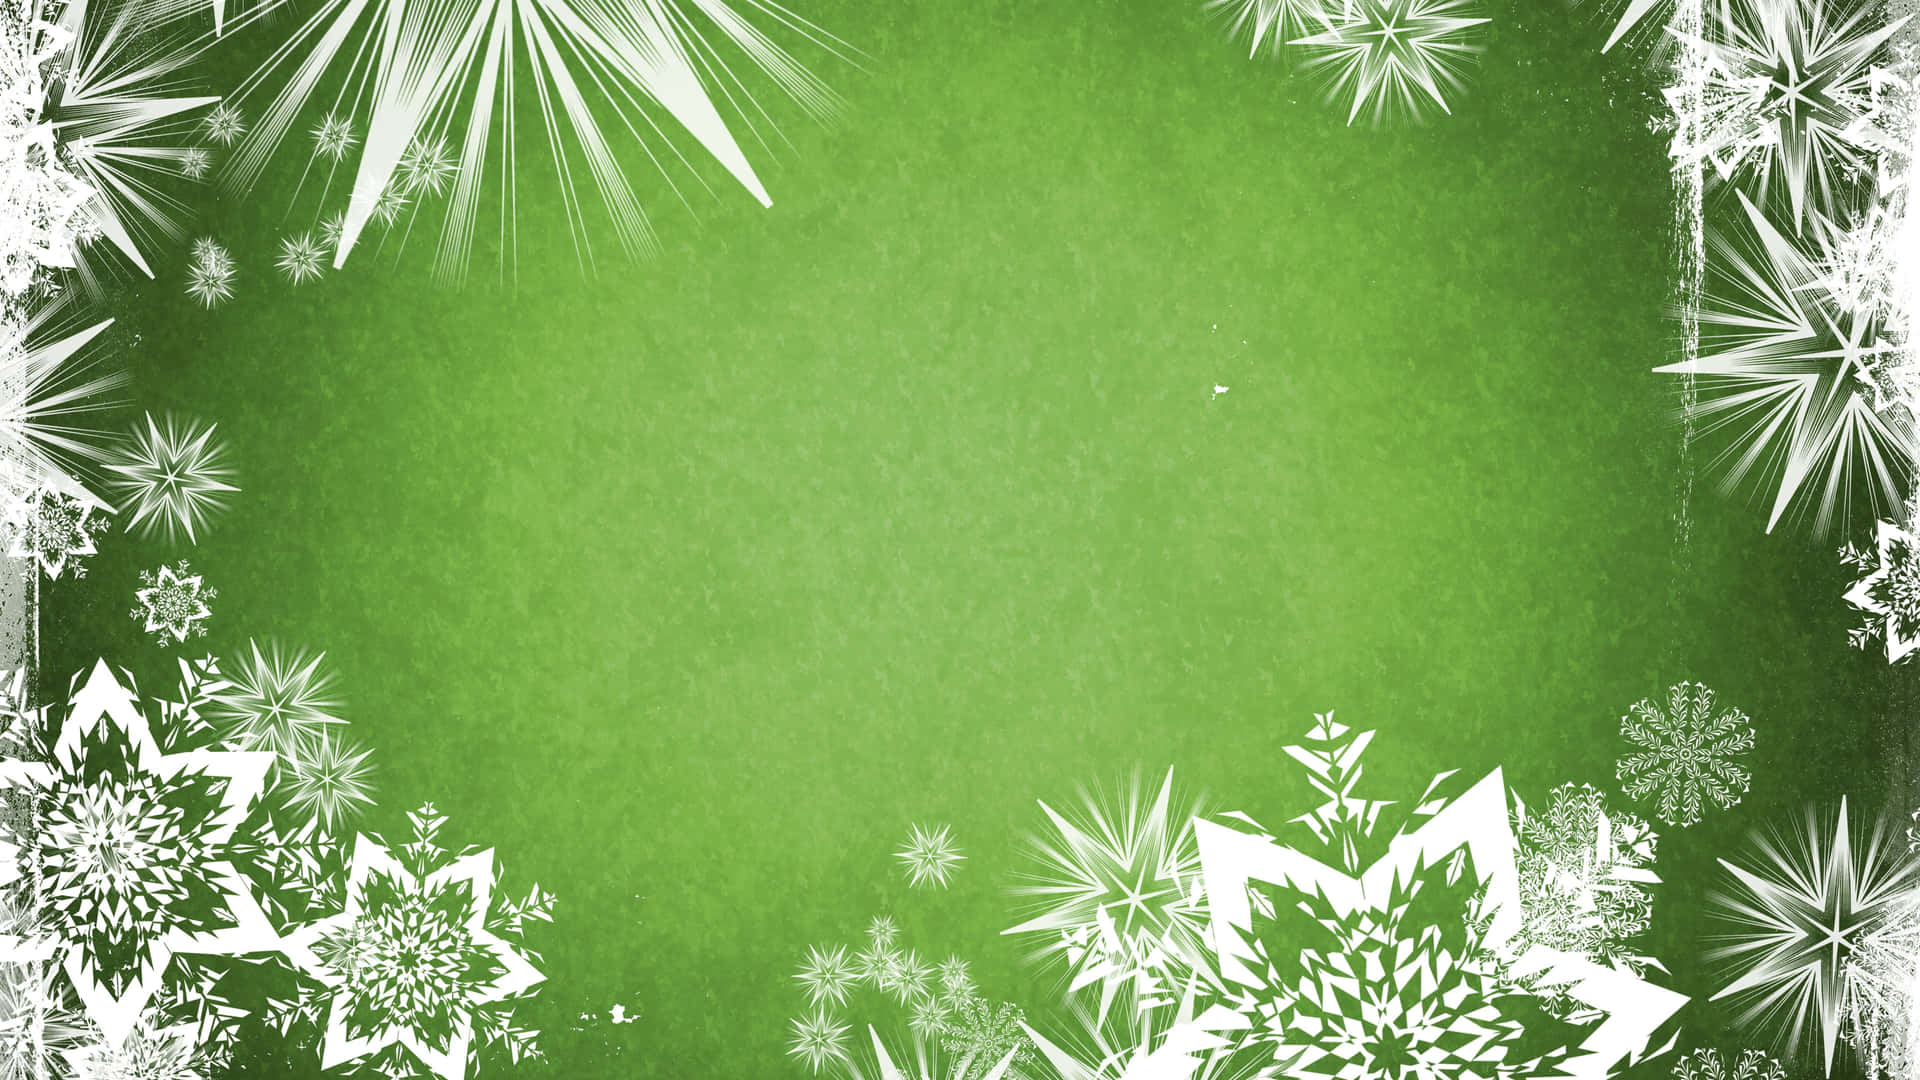 Eingrüner Hintergrund Mit Schneeflocken Und Weißen Schneeflocken.